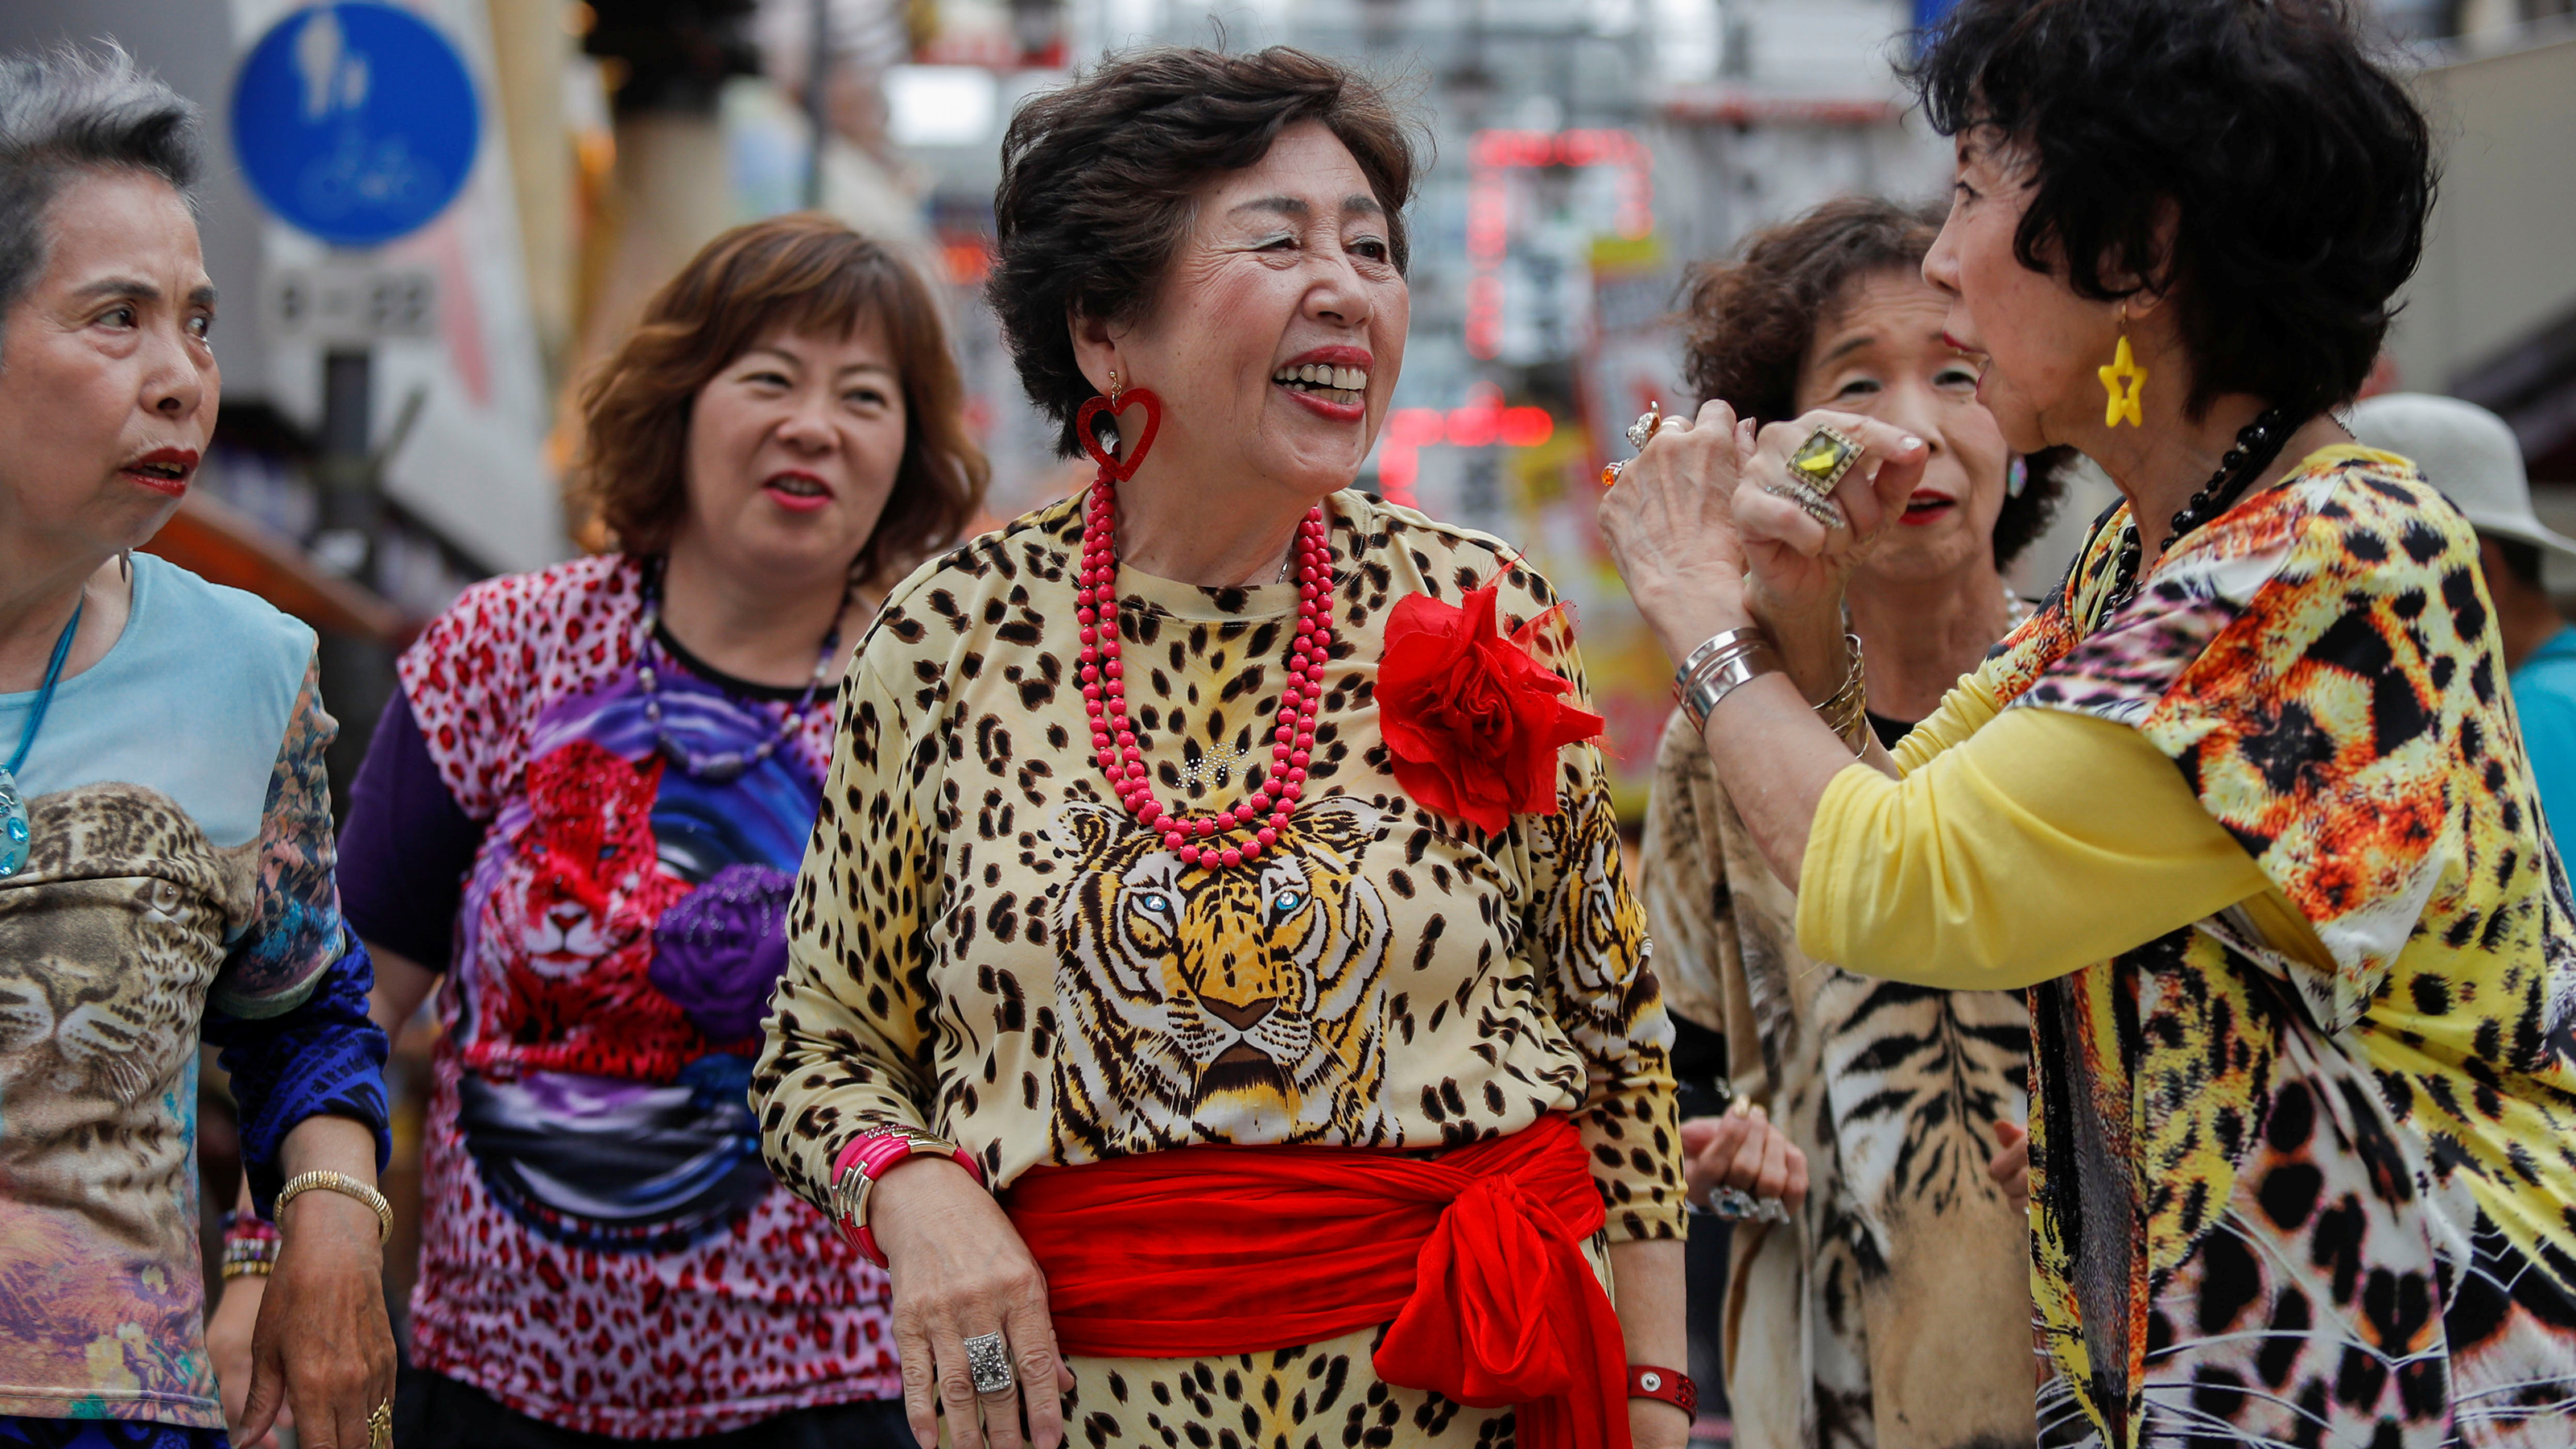 大阪のおばちゃん は中国人向けの観光資源だ 服装が派手 世話好き 親しみやすい President Online プレジデントオンライン